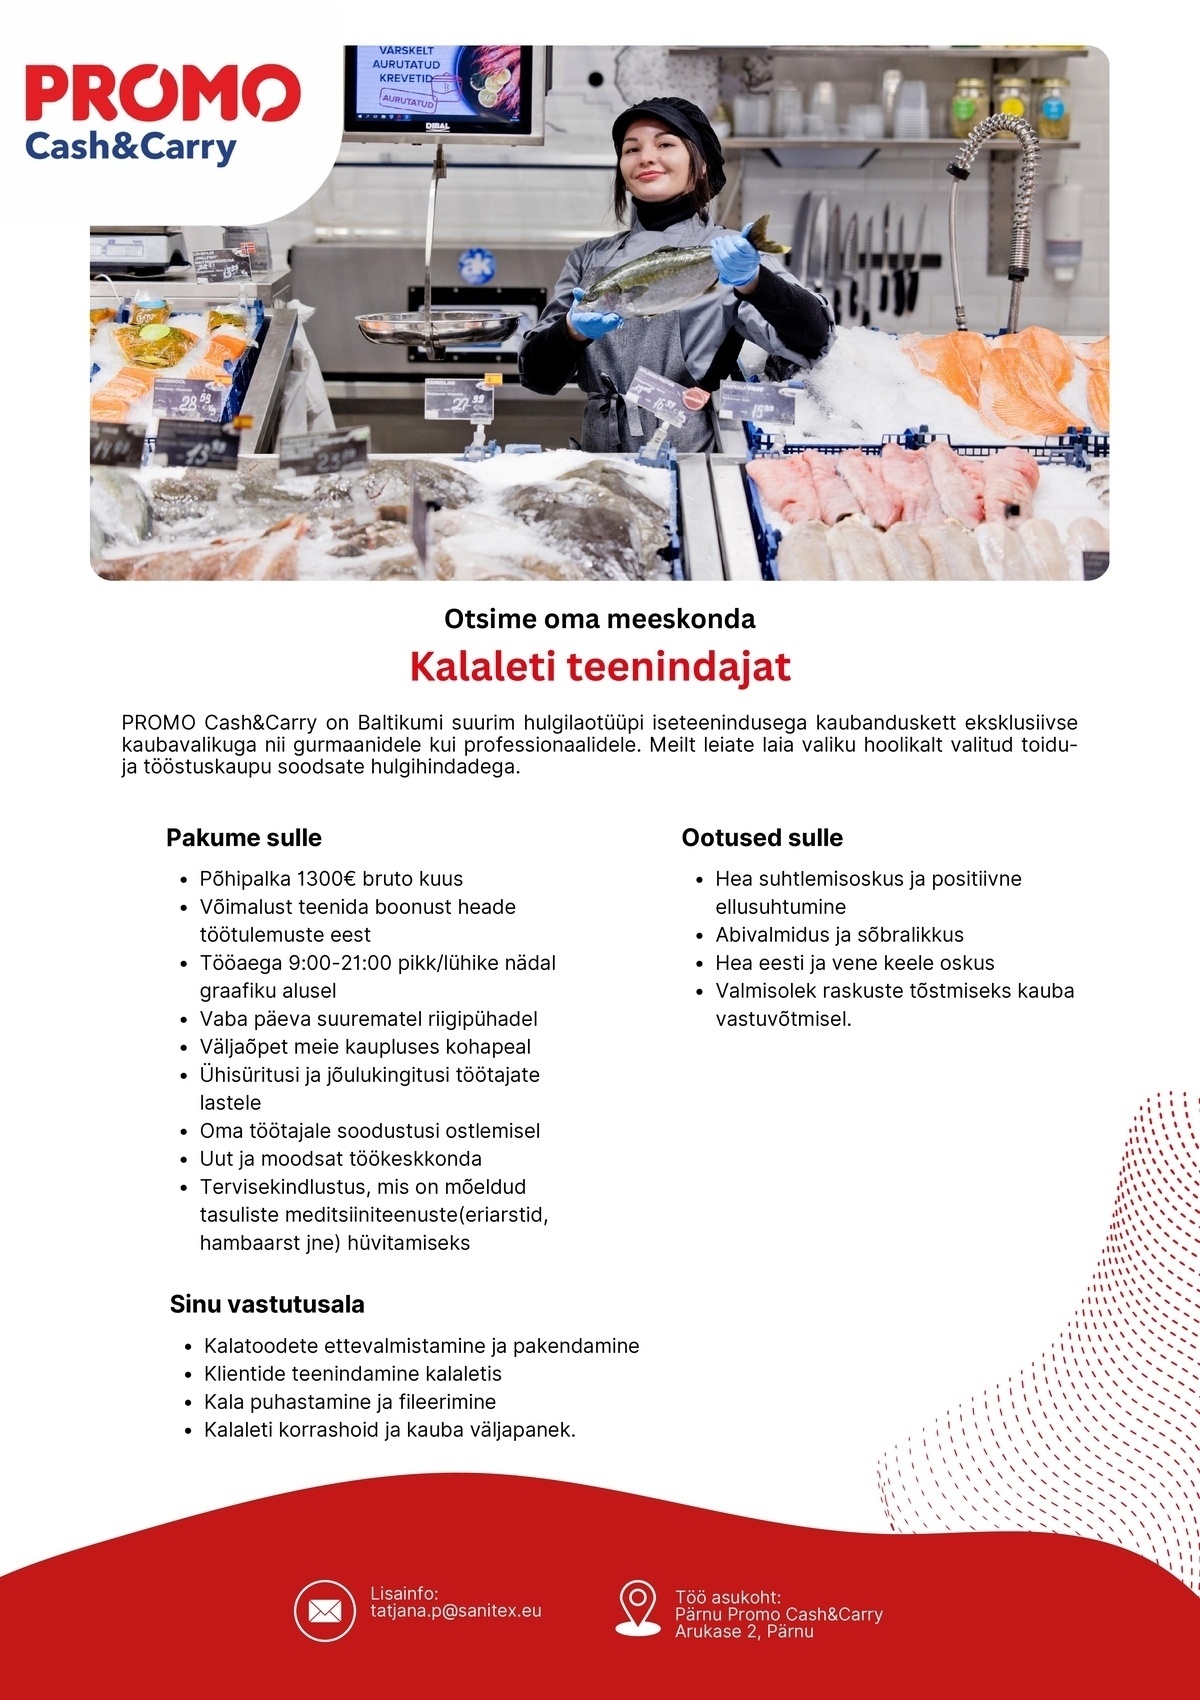 Sanitex OÜ Kalaleti teenindaja Pärnu Promo Cash&Carry hulgikaupluses